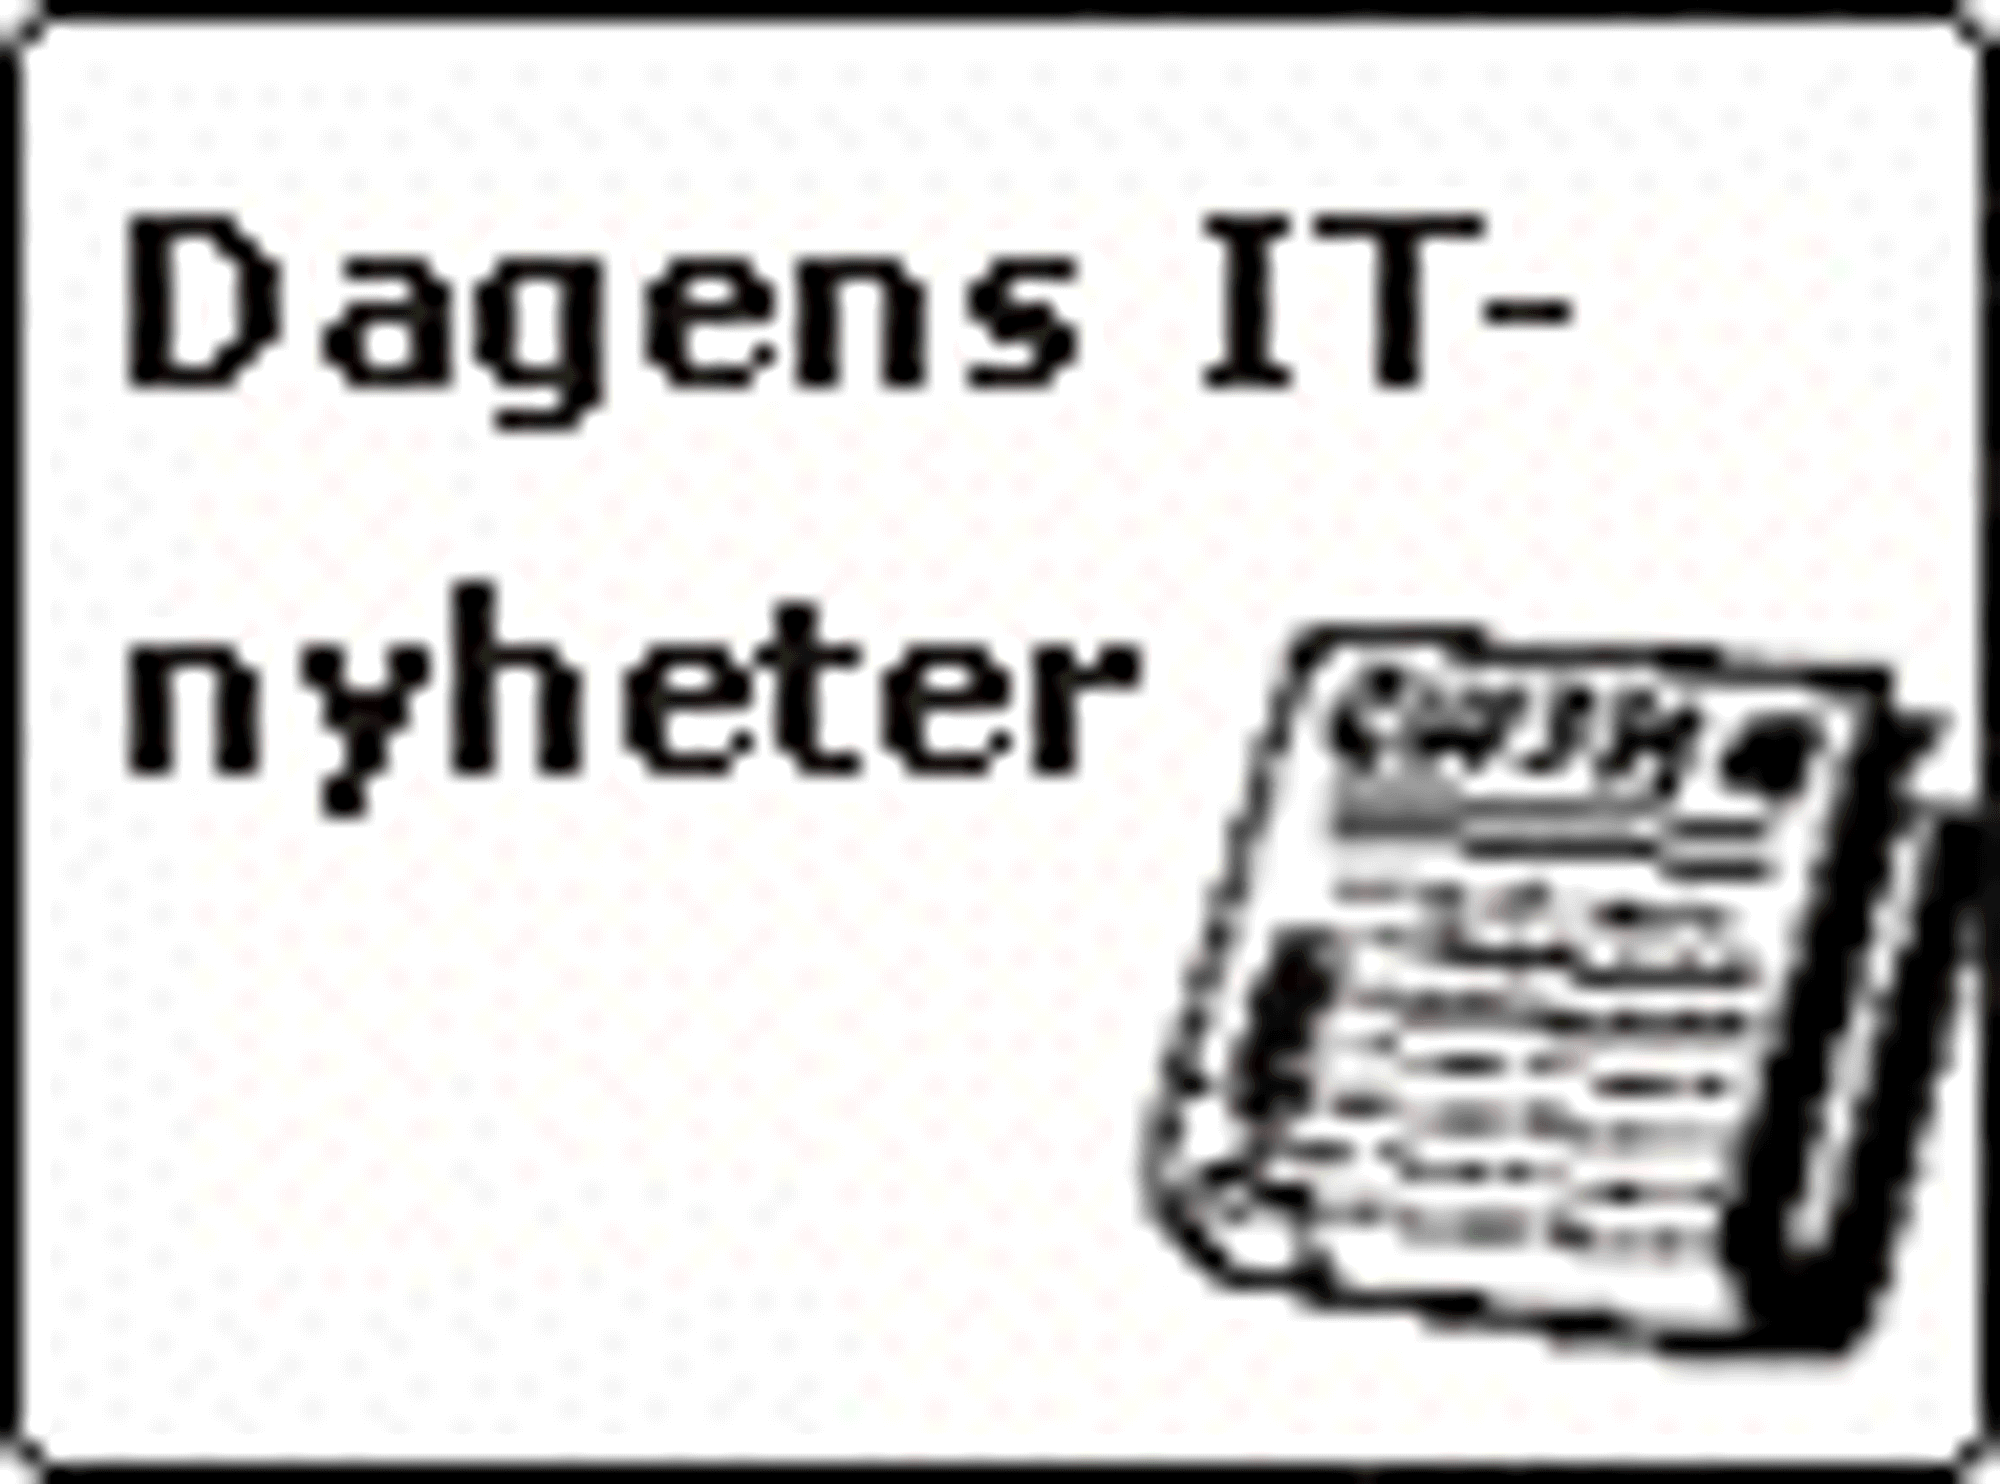 Vignett for Dagens IT-nyheter